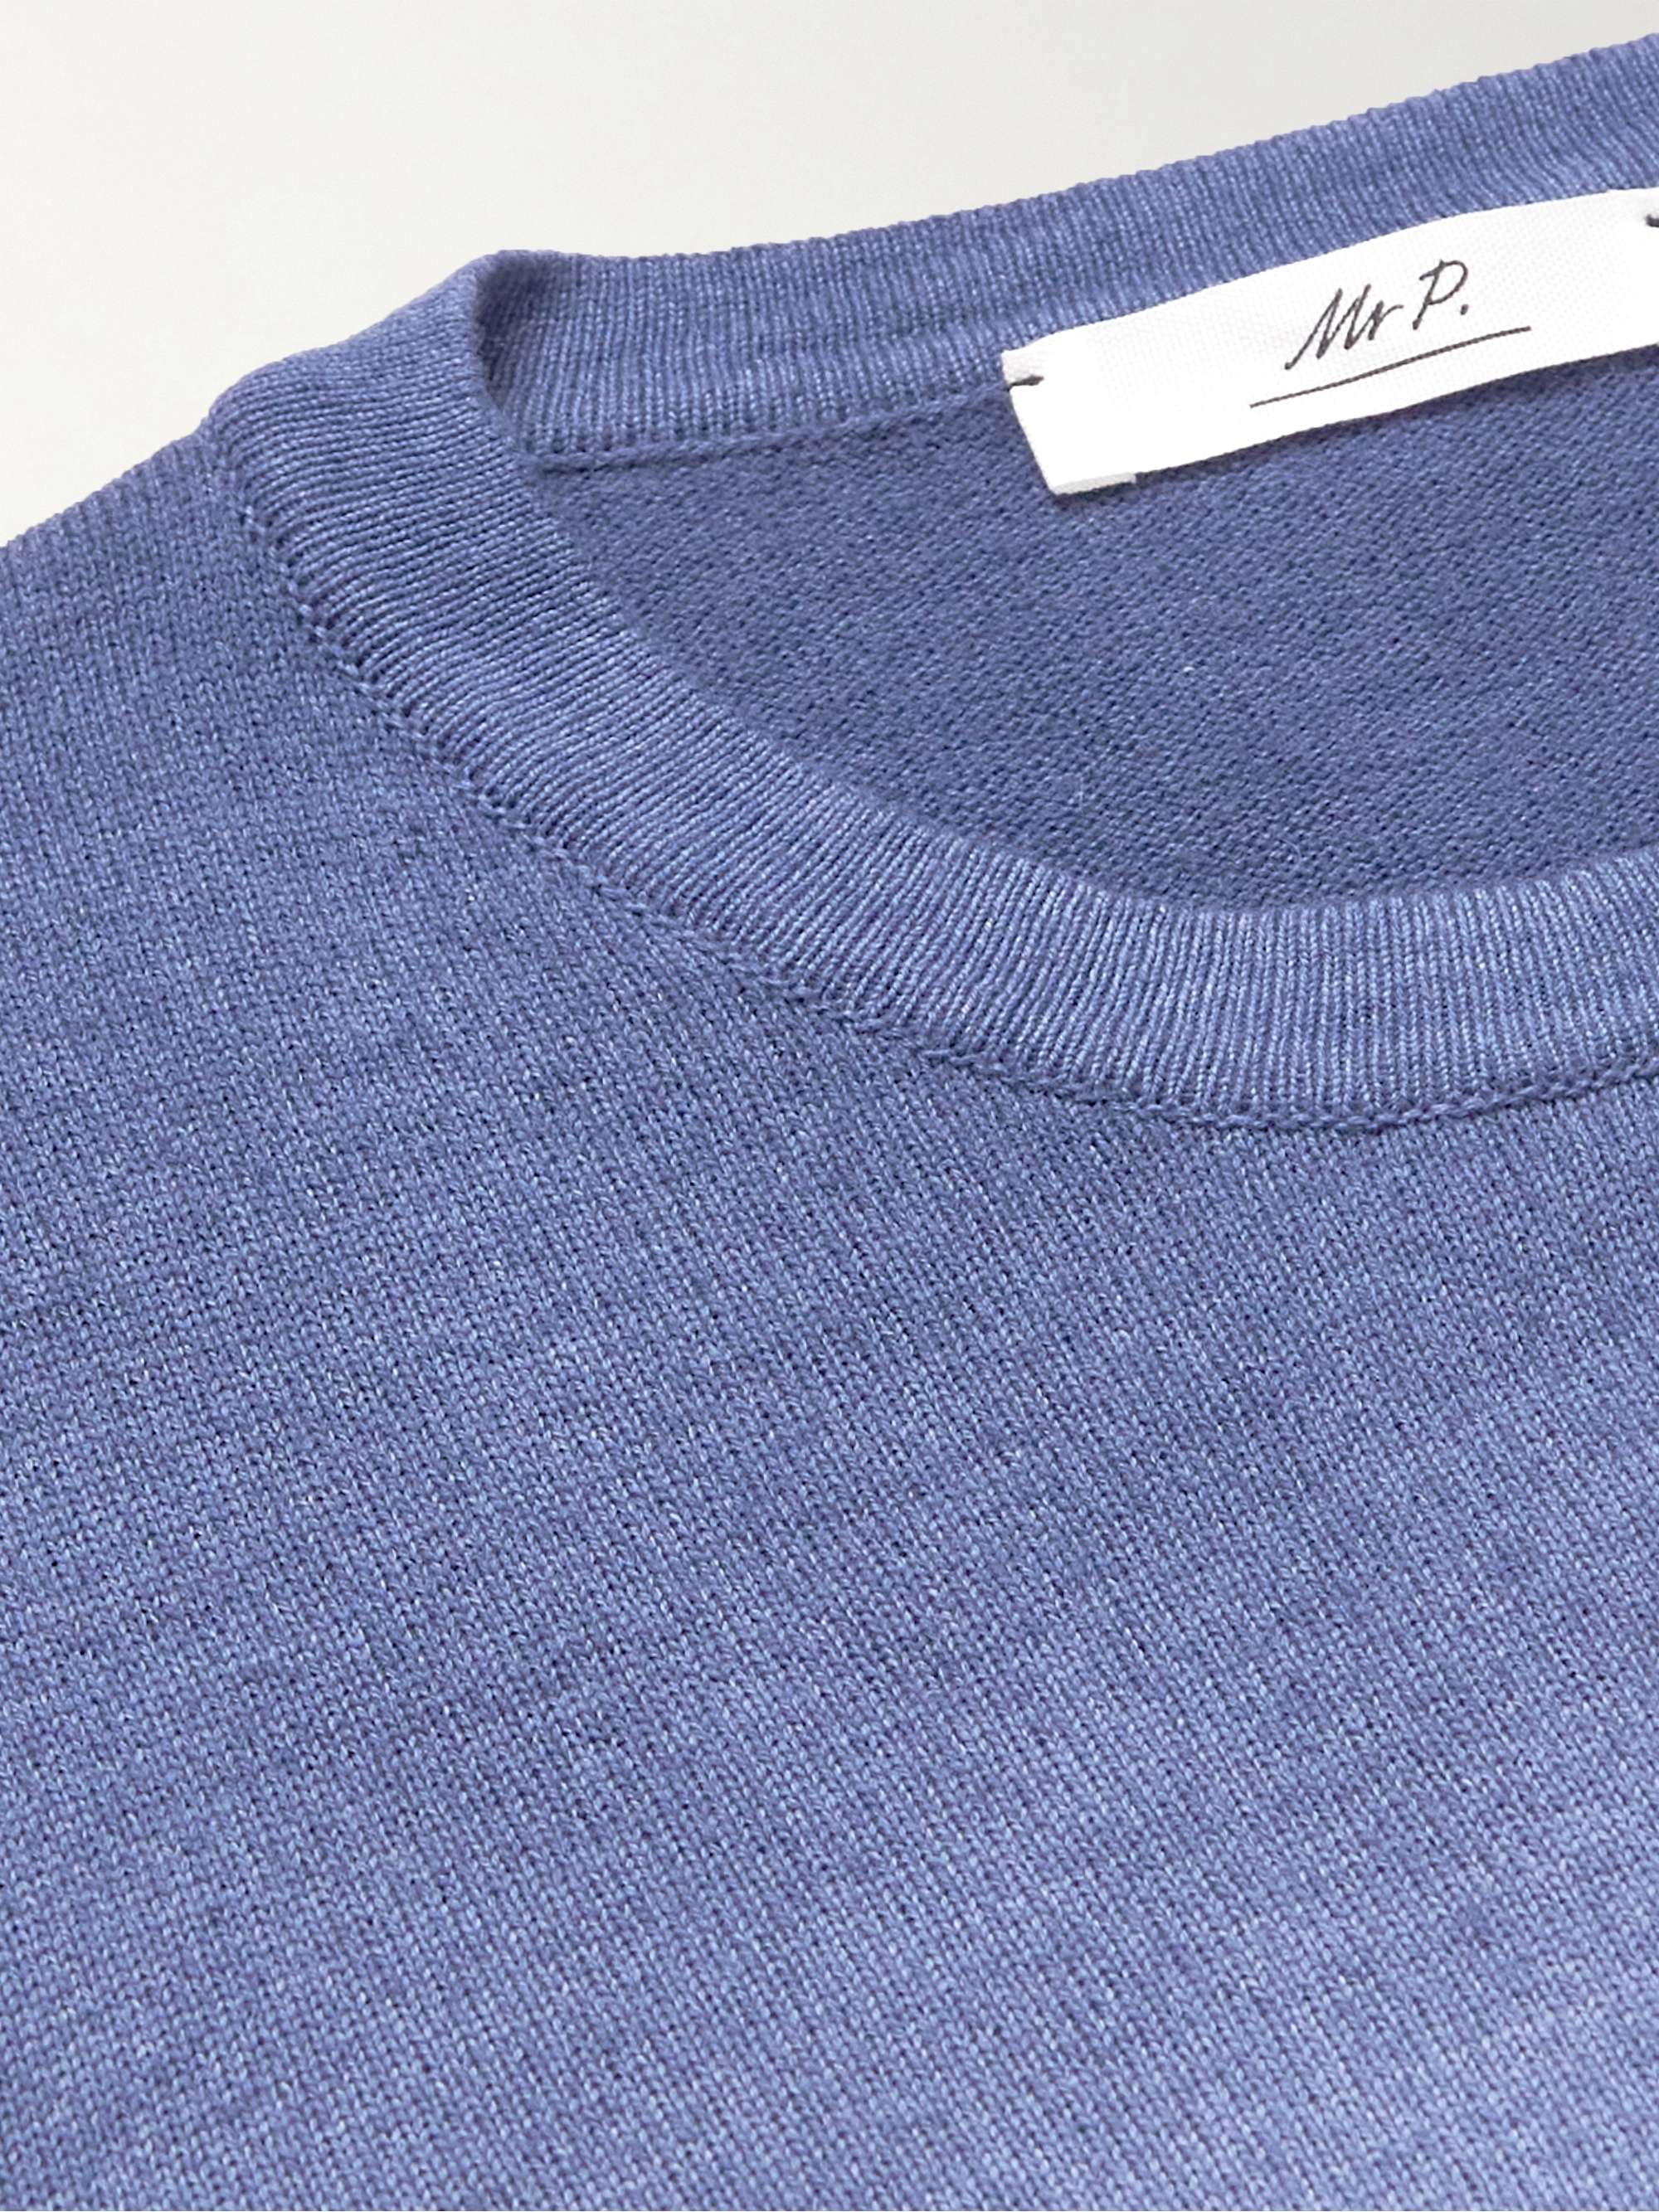 MR P. Knitted Garment-Dyed Merino Wool Sweater for Men | MR PORTER